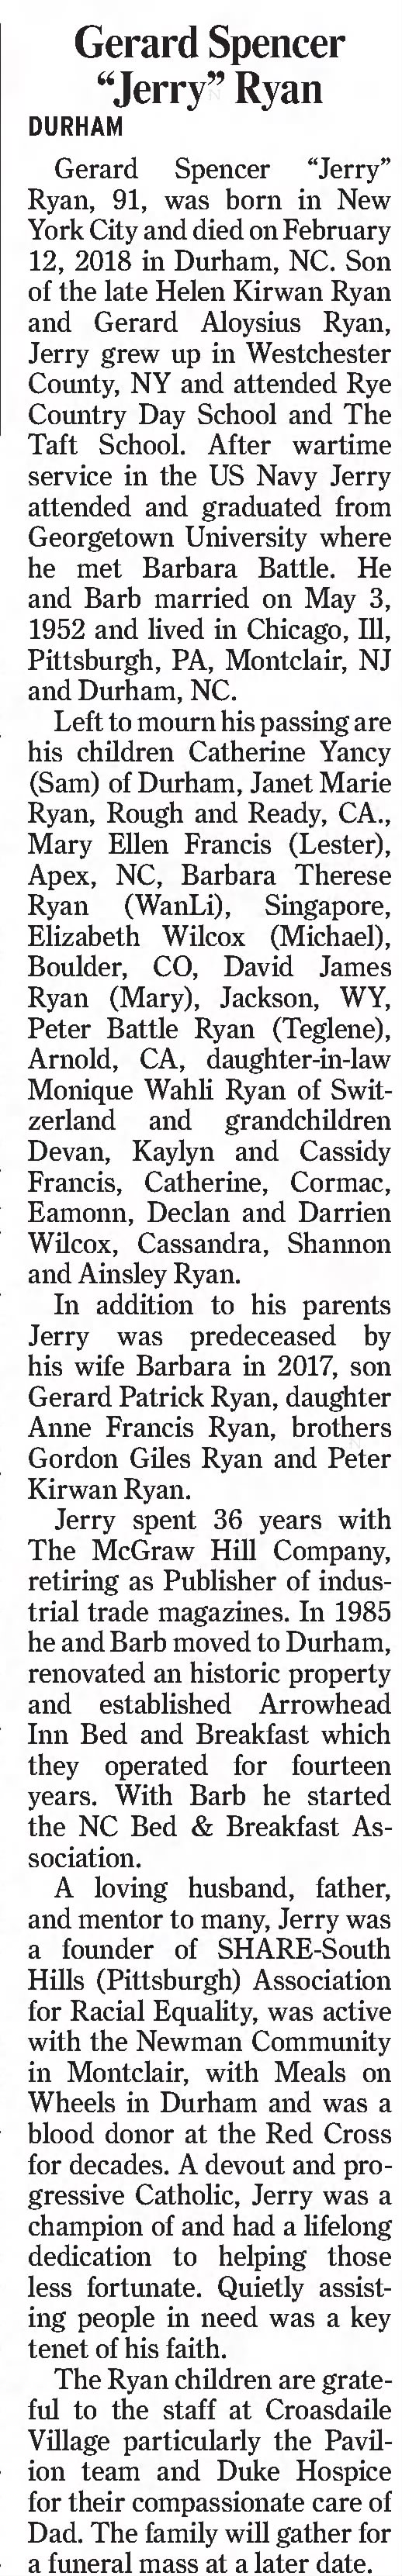 Obituary for Gerard Spencer Ryan